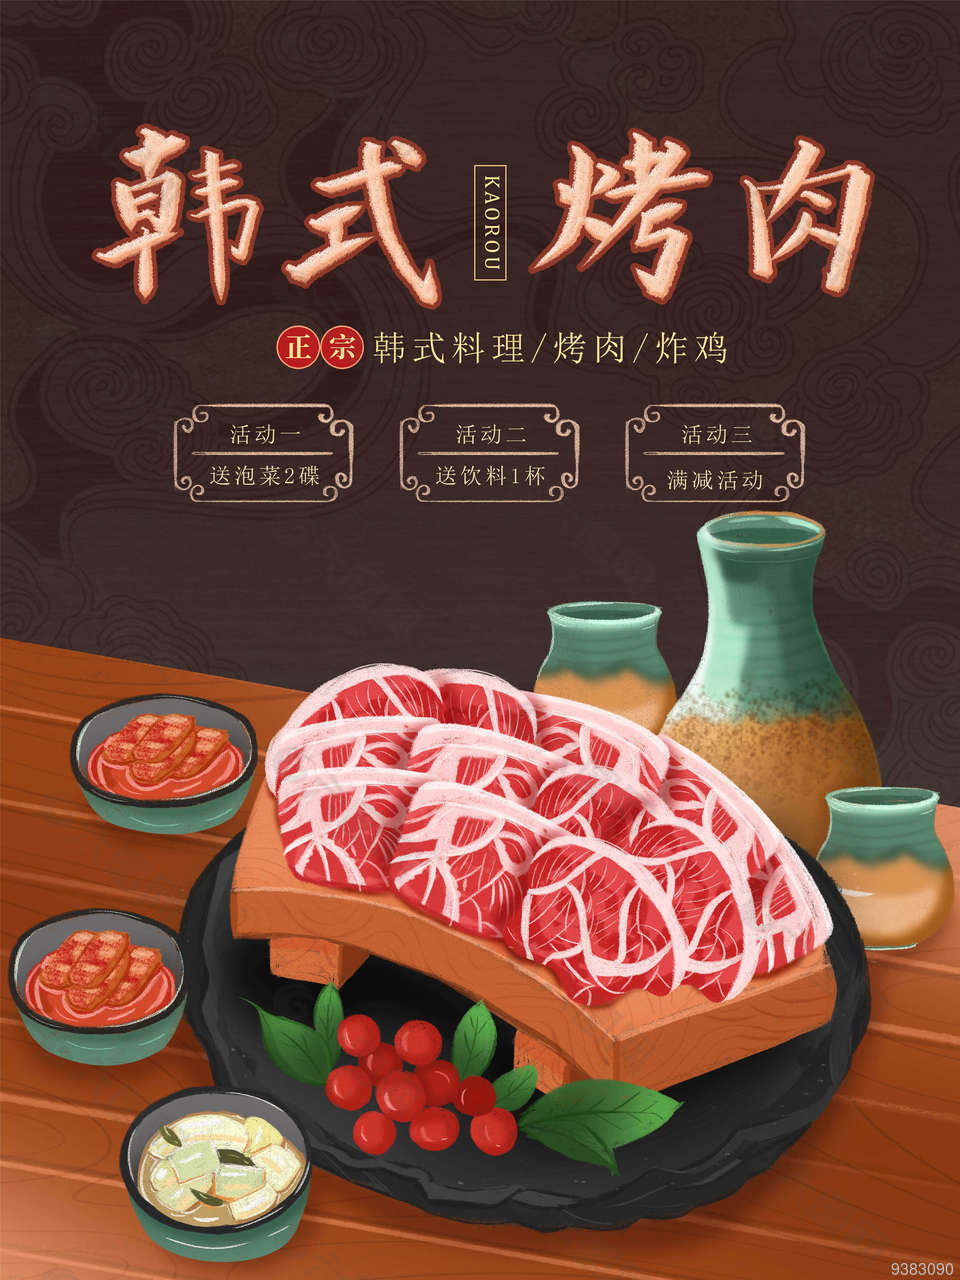 韩式烤肉店店铺宣传海报